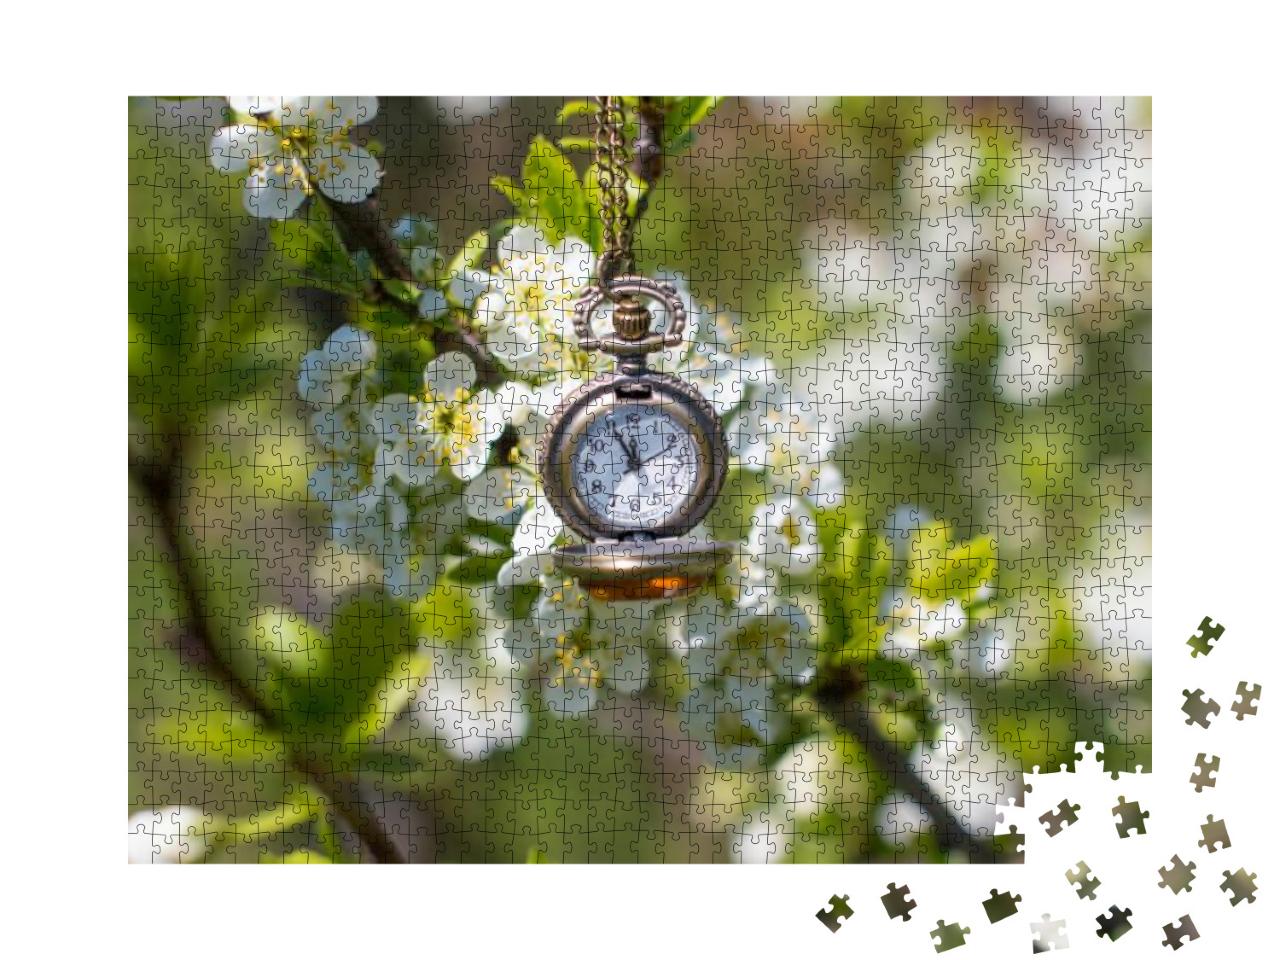 Puzzle 1000 Teile „Eine Taschenuhr vor blühenden Bäumen“